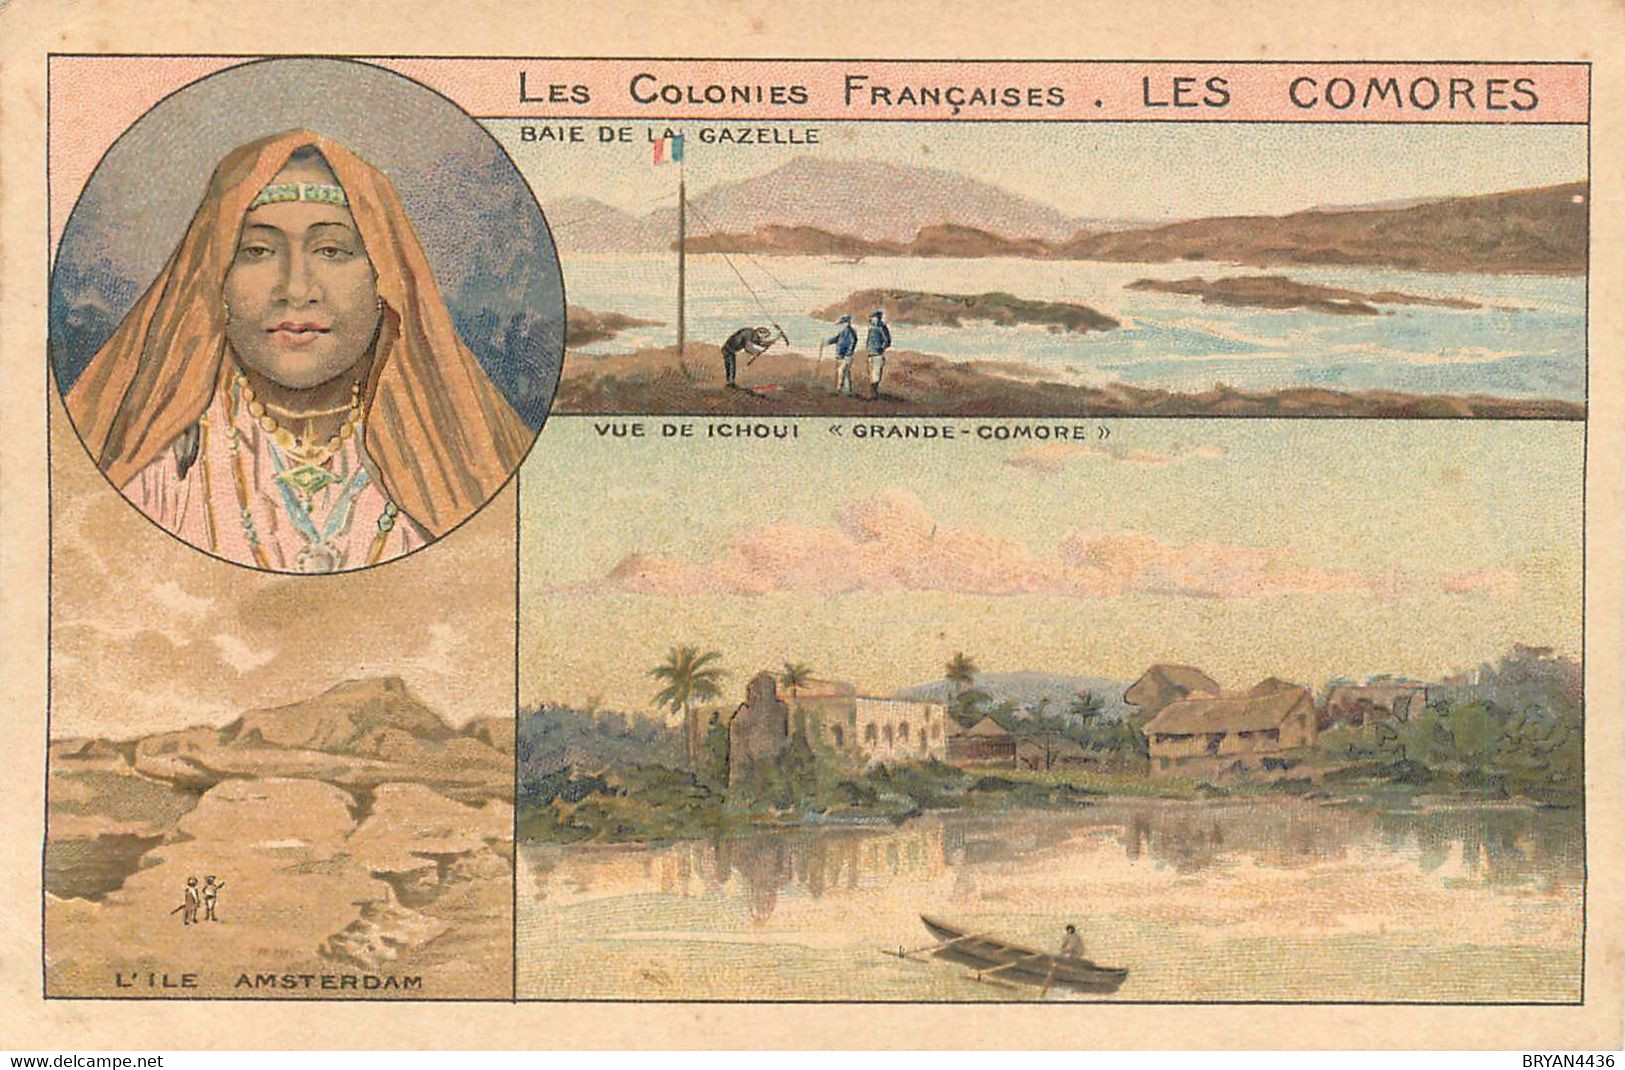 LES COMORES - COLONIE FRANCAISE - LIEUX & TYPES - CPA ILLUSTREE - TRES BON ETAT - Comores